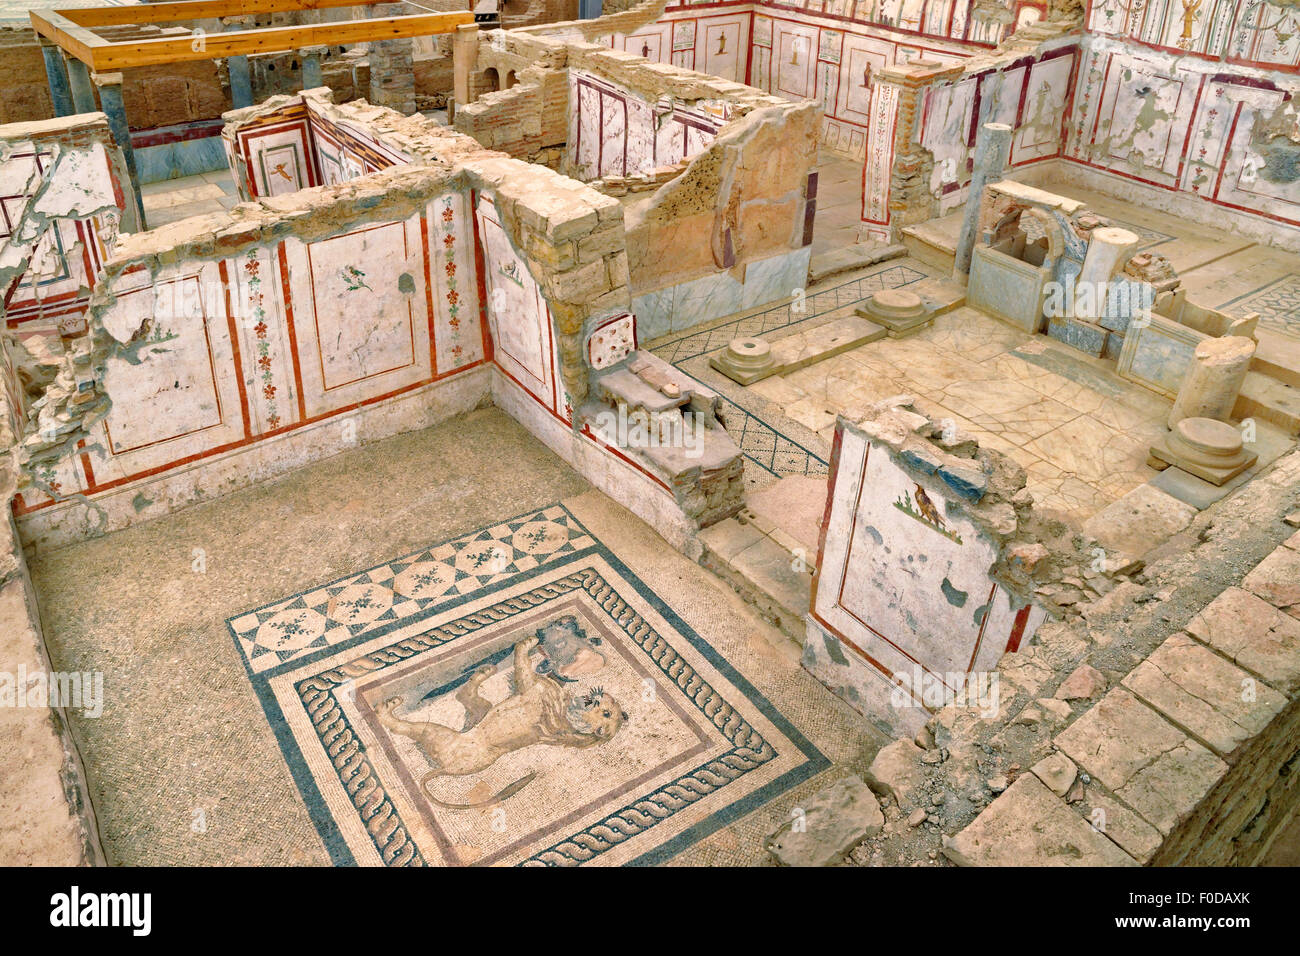 In der überdachten "Terraced Houses" archäologischen Stätte in der antiken griechischen/römischen Reiches Stadt Ephesus, Selcuk, Türkei. Stockfoto